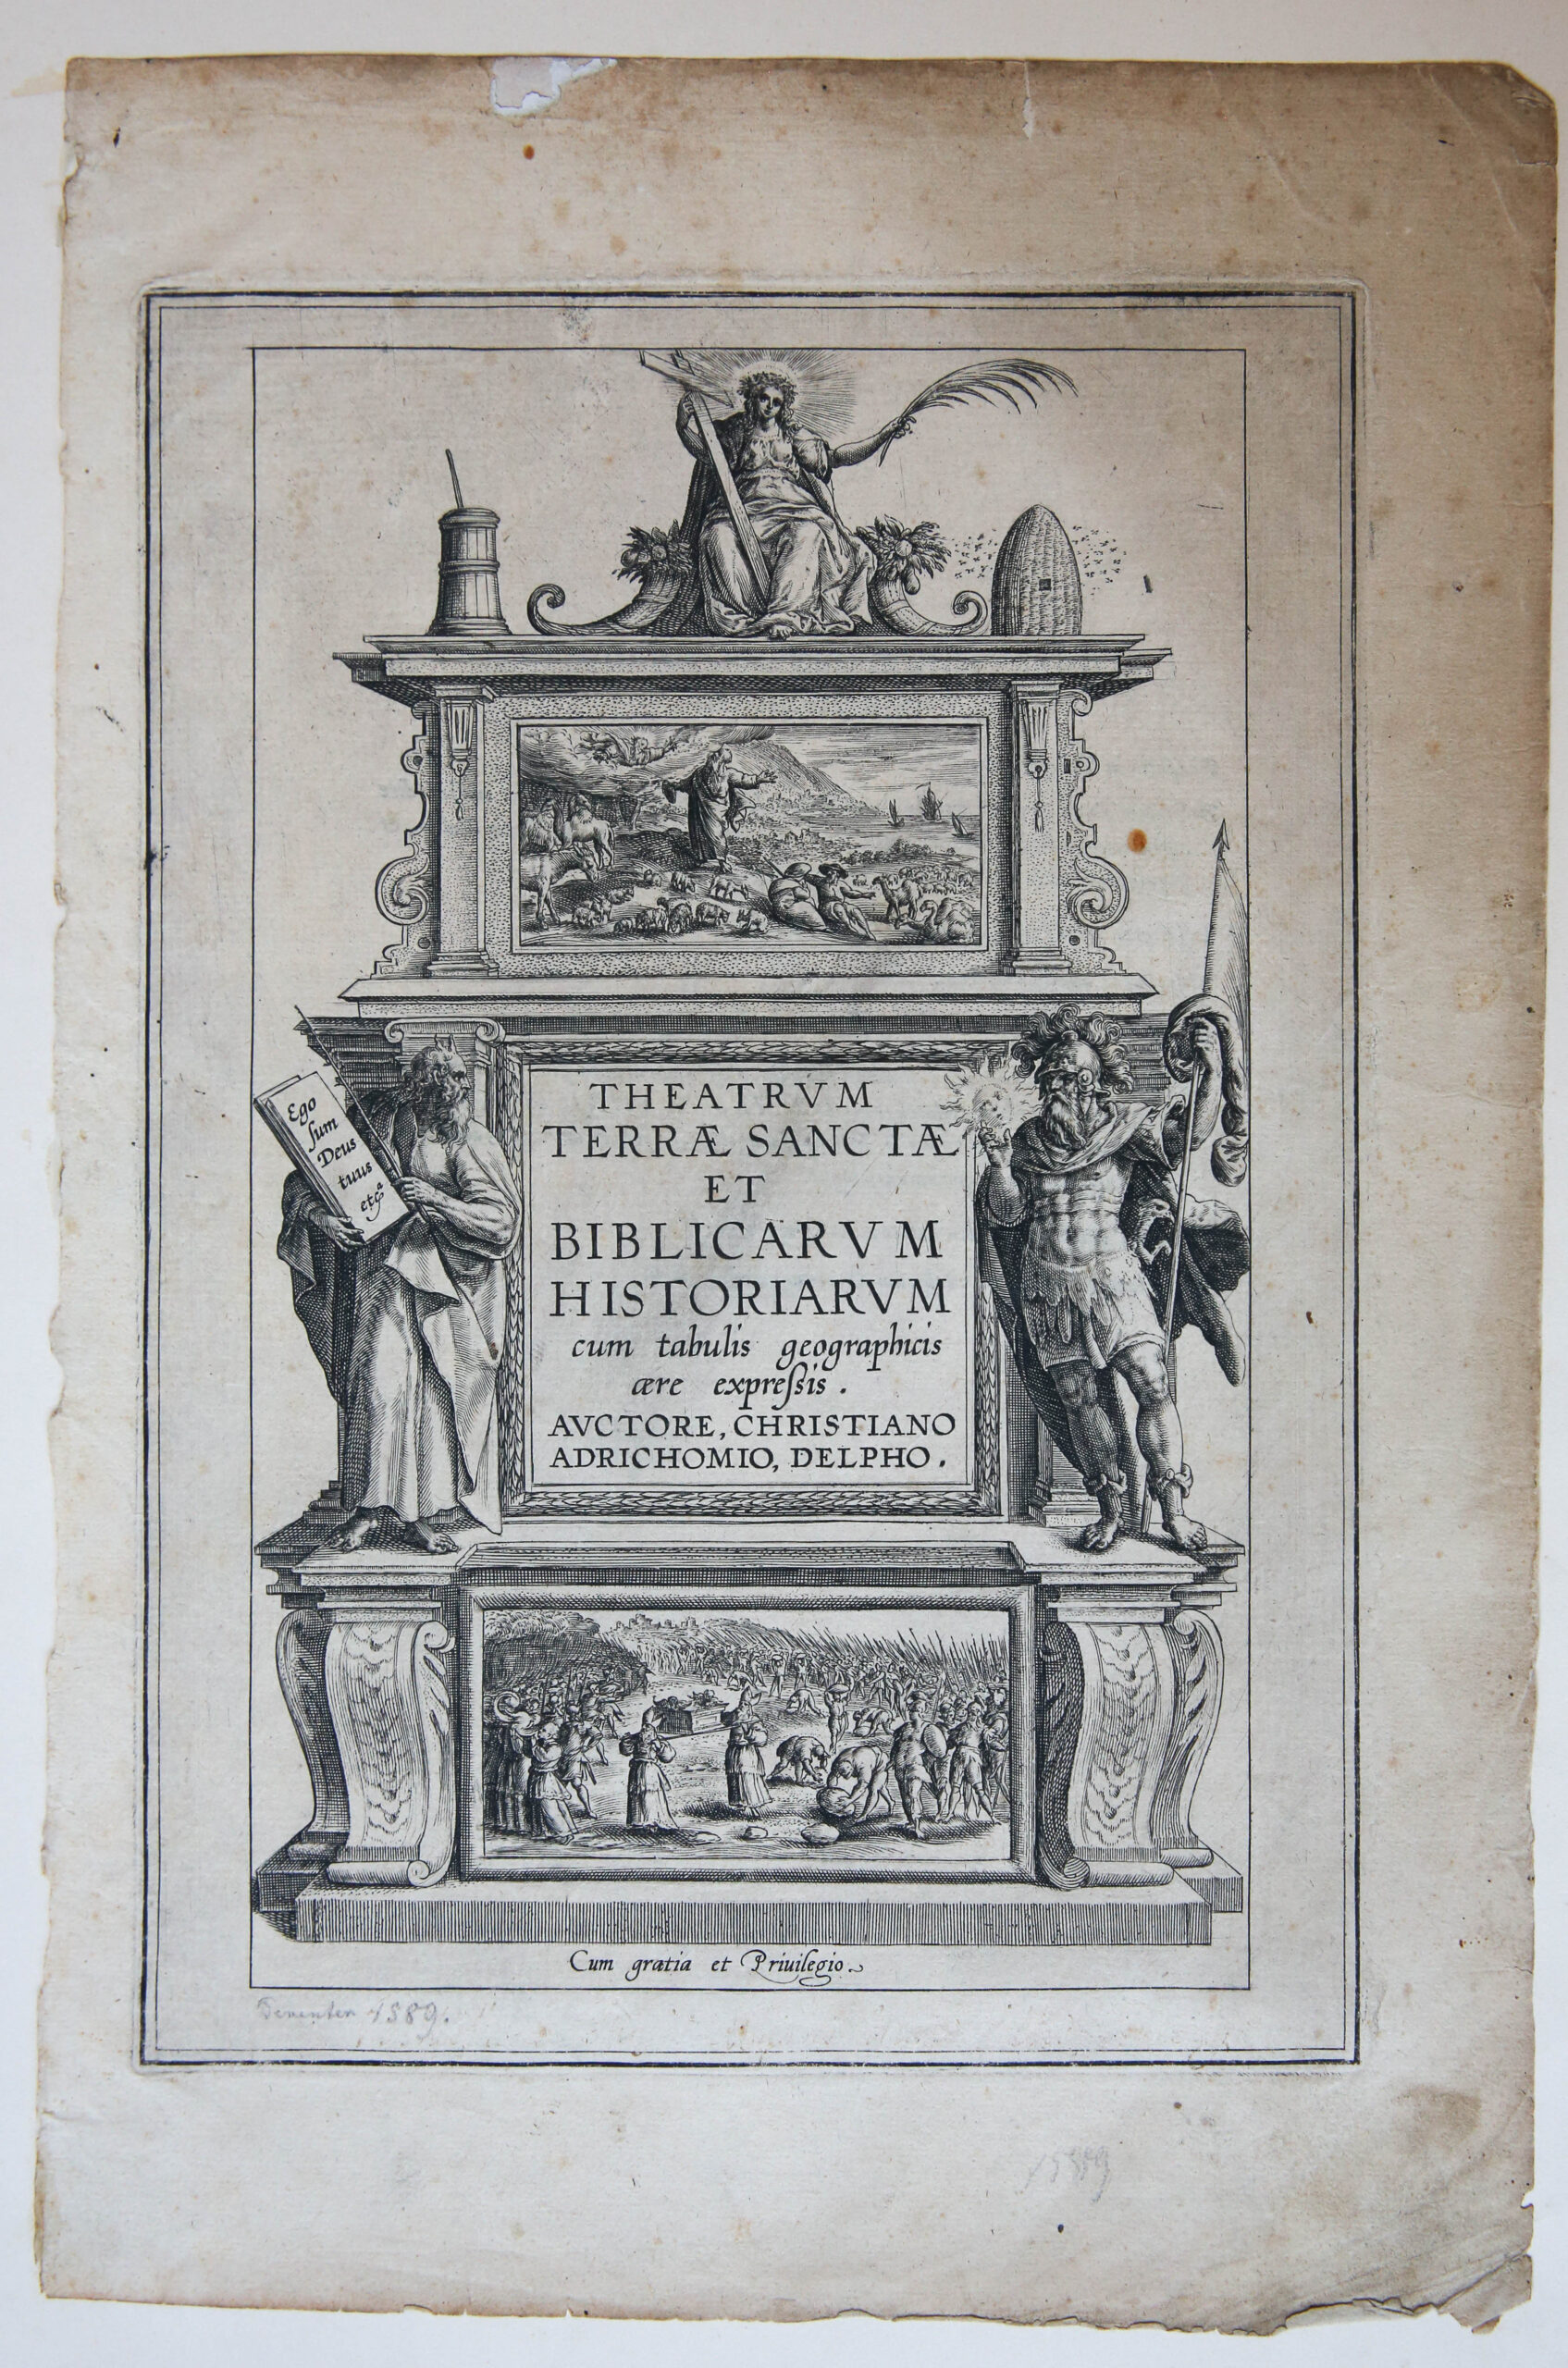 [Antique title page, 1590] Theatrum Terrae Sanctae et biblicarum historiarum cum tabulis geographicis aere expressis, published 1590, 1 p.